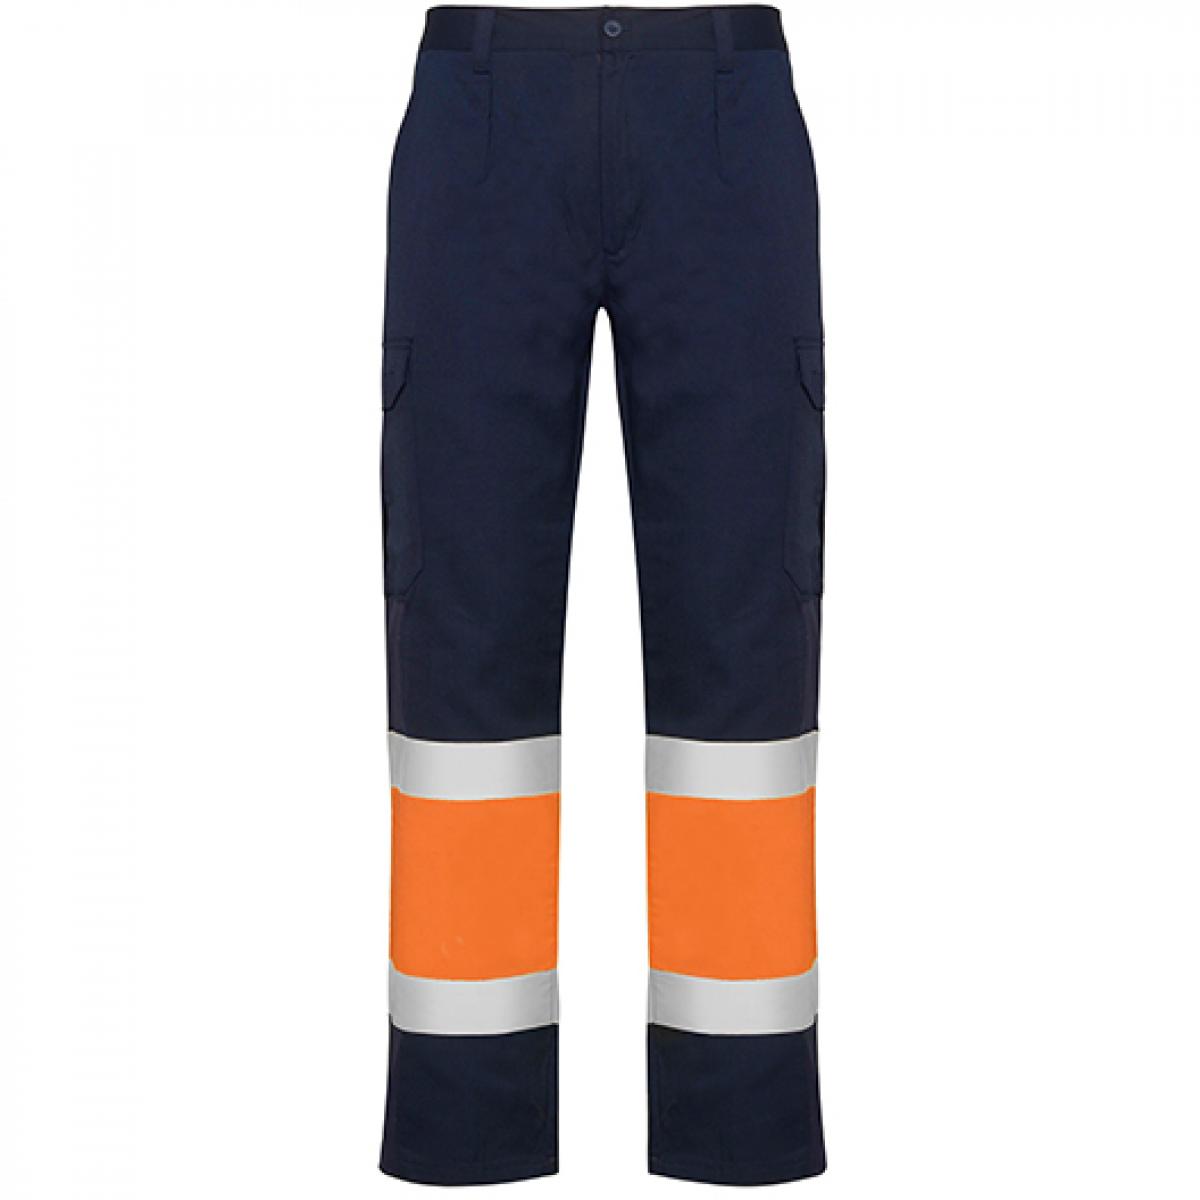 Hersteller: Roly Workwear Herstellernummer: HV9300 Artikelbezeichnung: Naos Hi-Viz Trousers - Arbeitshose mit Reflektionsstreifen Farbe: Navy Blue 55/Fluor Orange 223